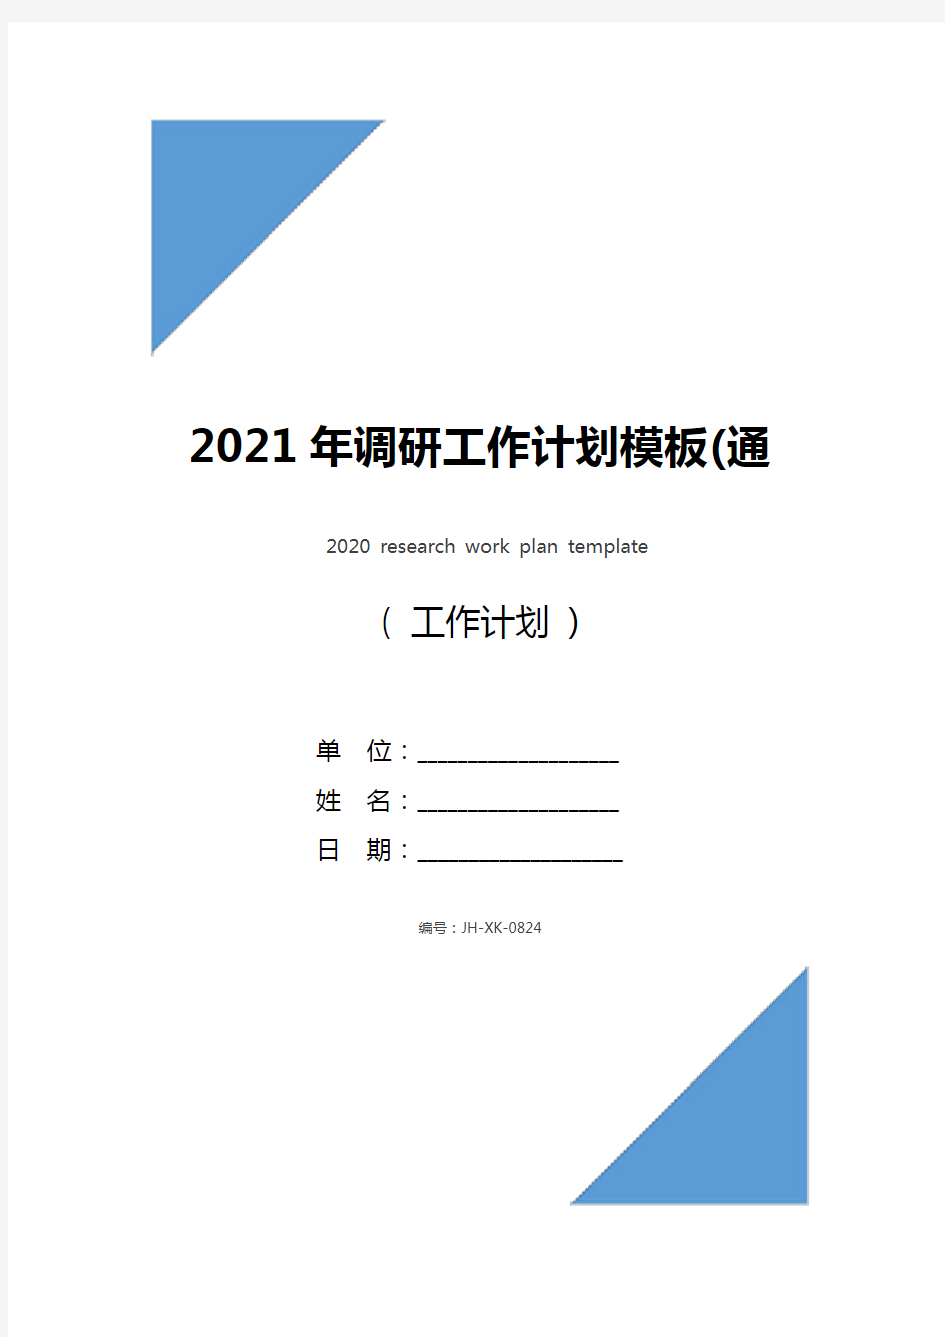 2021年调研工作计划模板(通用版)